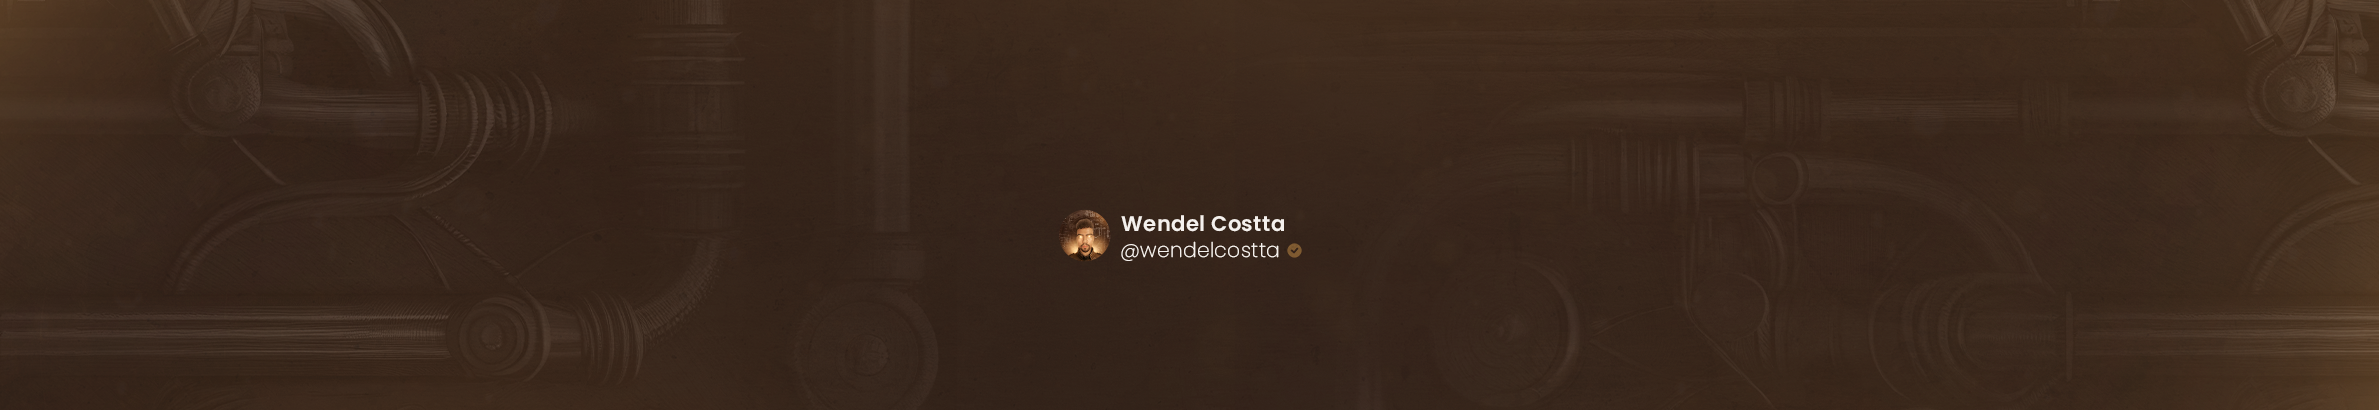 Banner del profilo di Wendel Costta